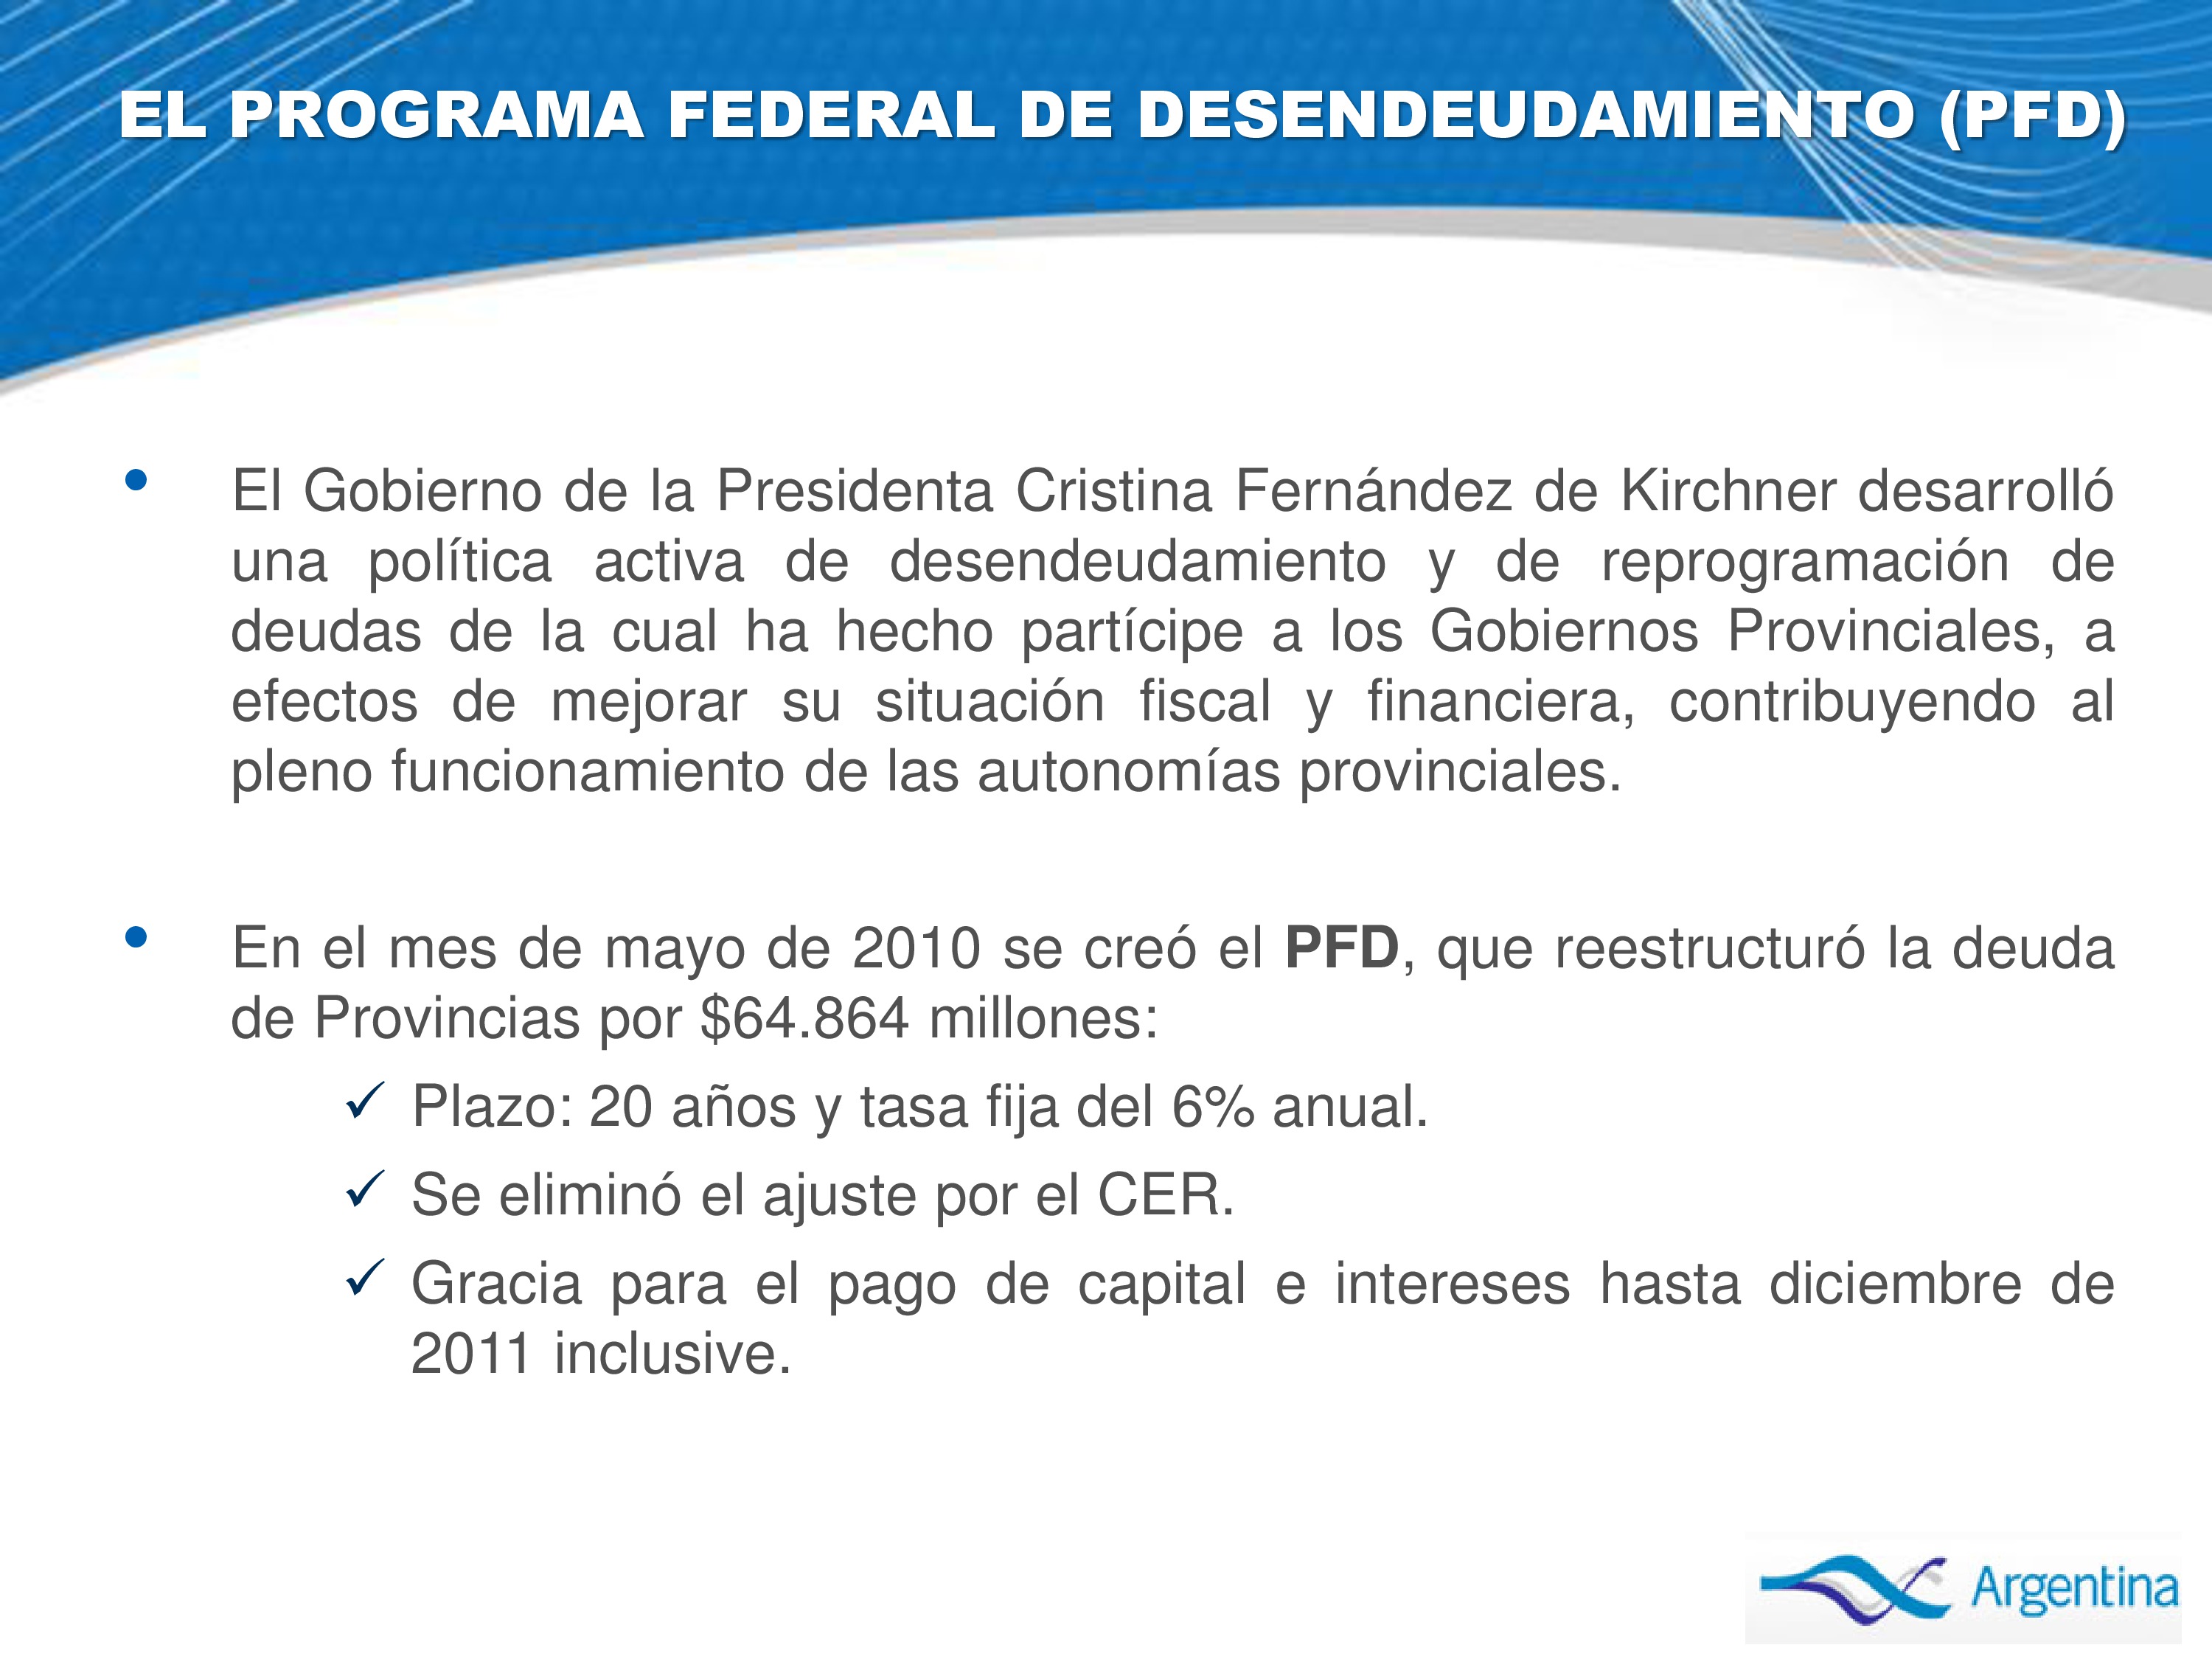 Firmamos convenios de desendeudamiento con provincias argentinas